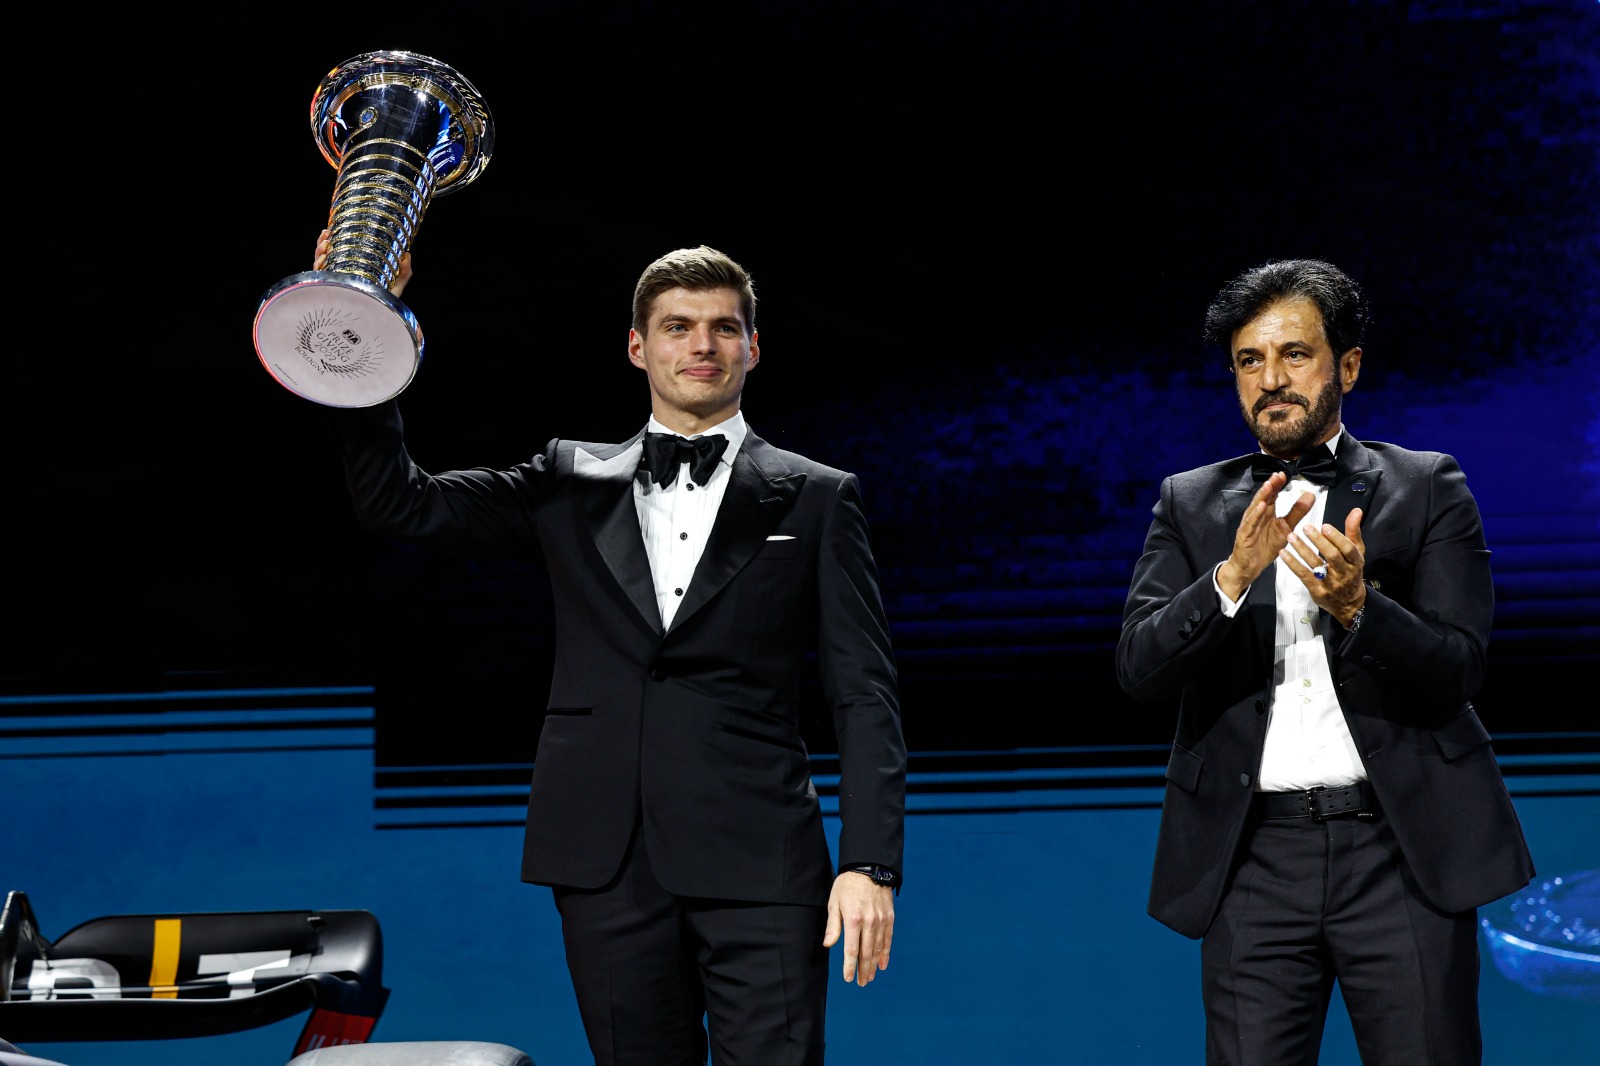 Max verstappen recevant son trophée du Champion du Monde de F1